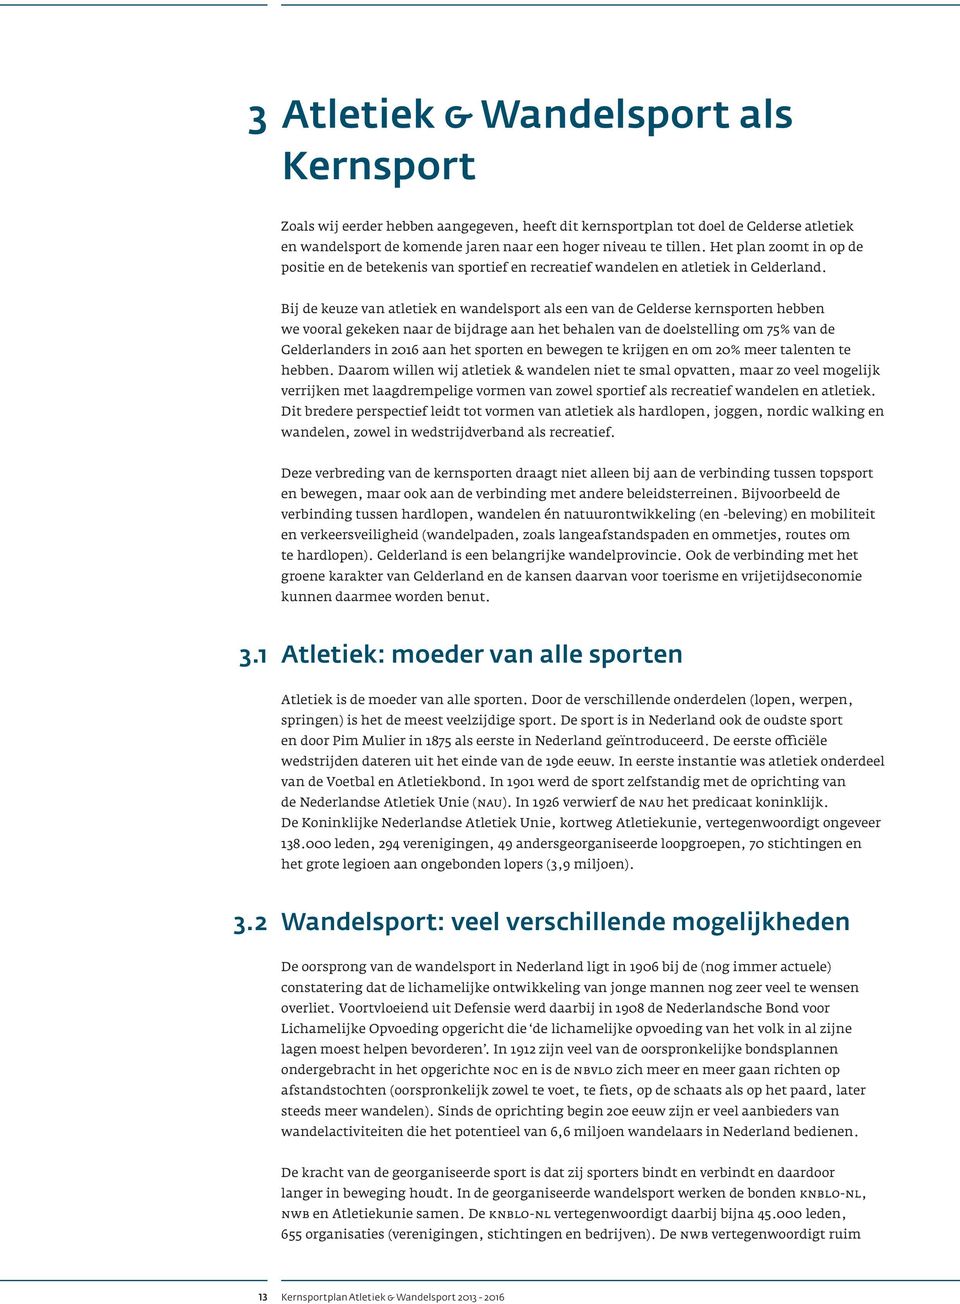 Bij de keuze van atletiek en wandelsport als een van de Gelderse kernsporten hebben we vooral gekeken naar de bijdrage aan het behalen van de doelstelling om 75% van de Gelderlanders in 2016 aan het